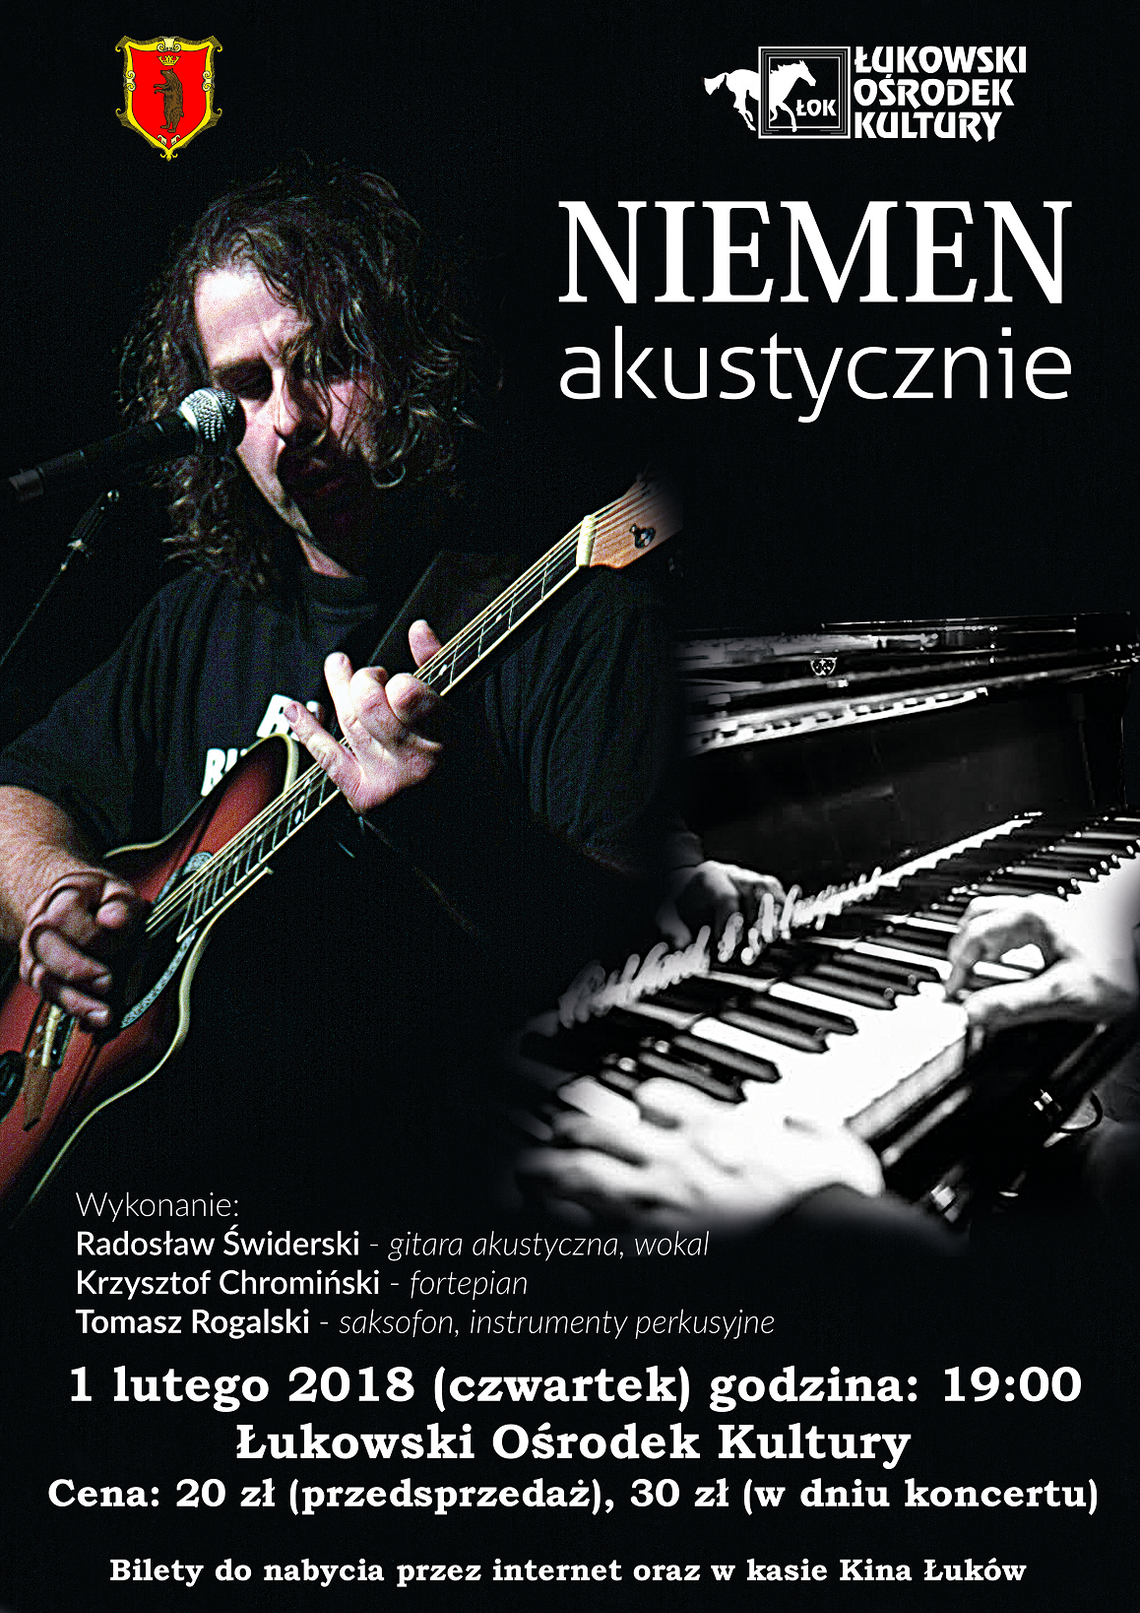 Koncert piosenek Czesława Niemena „Niemen akustycznie” w Łukowskim Ośrodku Kultury